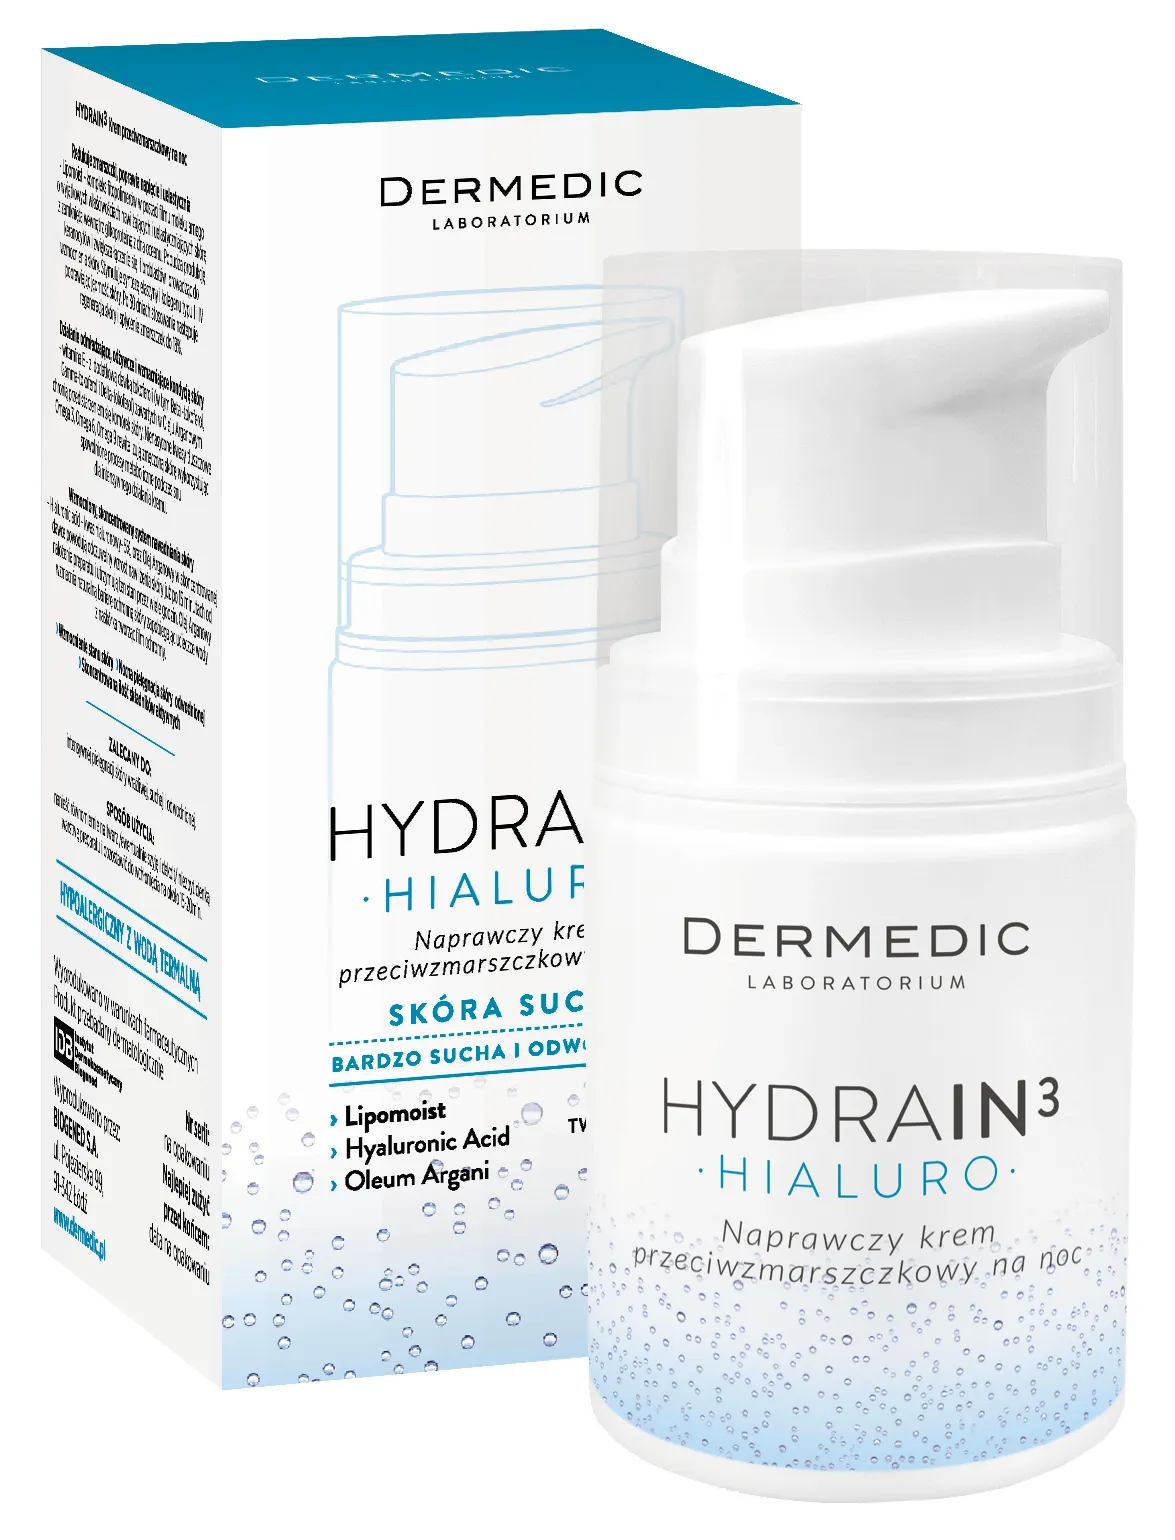 Dermedic Hydrain3 Hialuro Noční hydratační krém proti vráskám, 55g